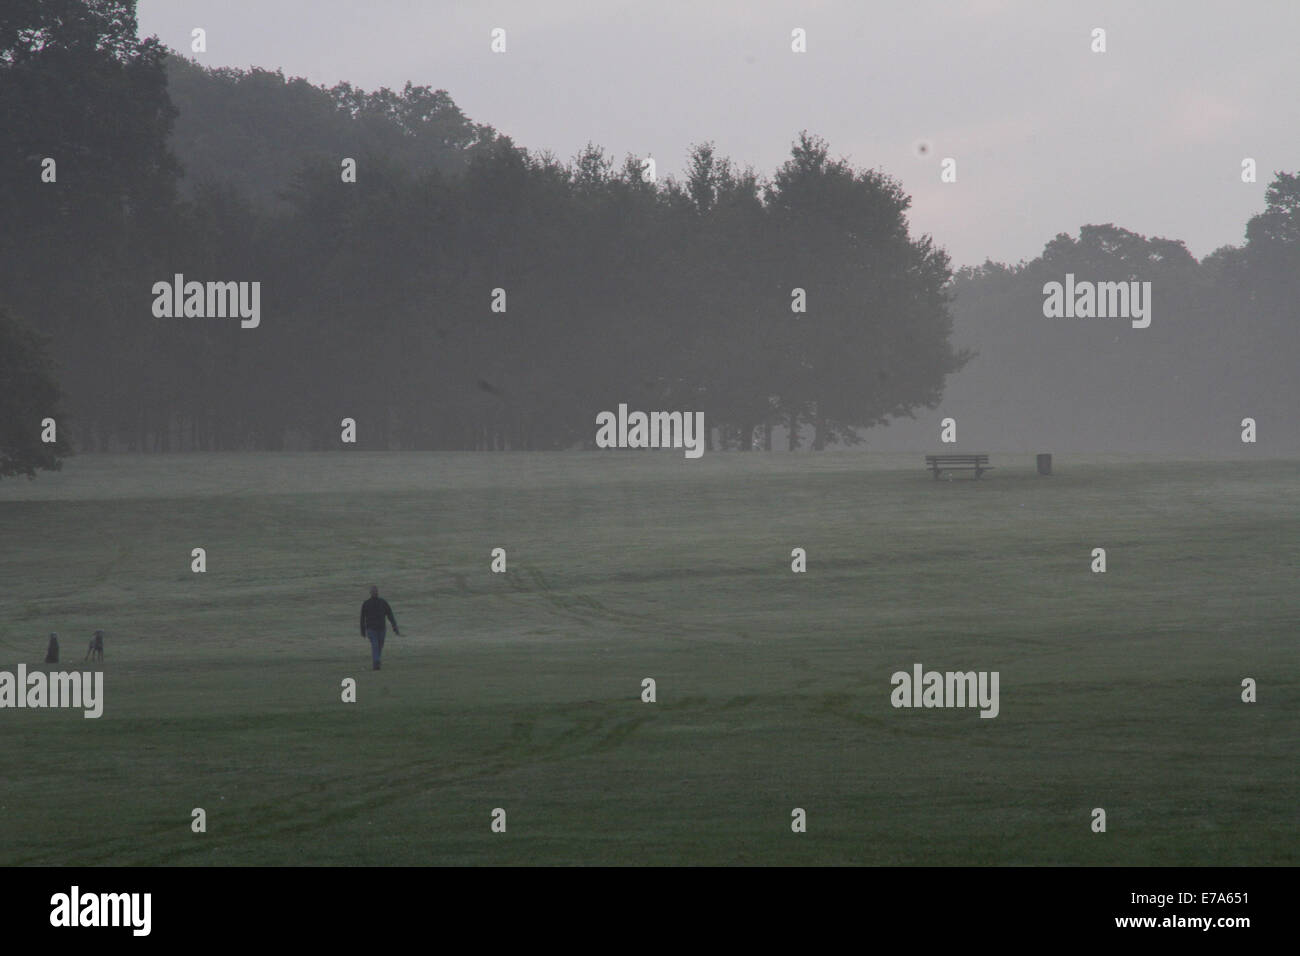 Oxford, Reino Unido. El 11 de septiembre de 2014. xford, Inglaterra el 11 de septiembre de 2014. Un hombre camina su perro en South Park, Oxford. Crédito: petericardo lusabia/Alamy Live News Foto de stock